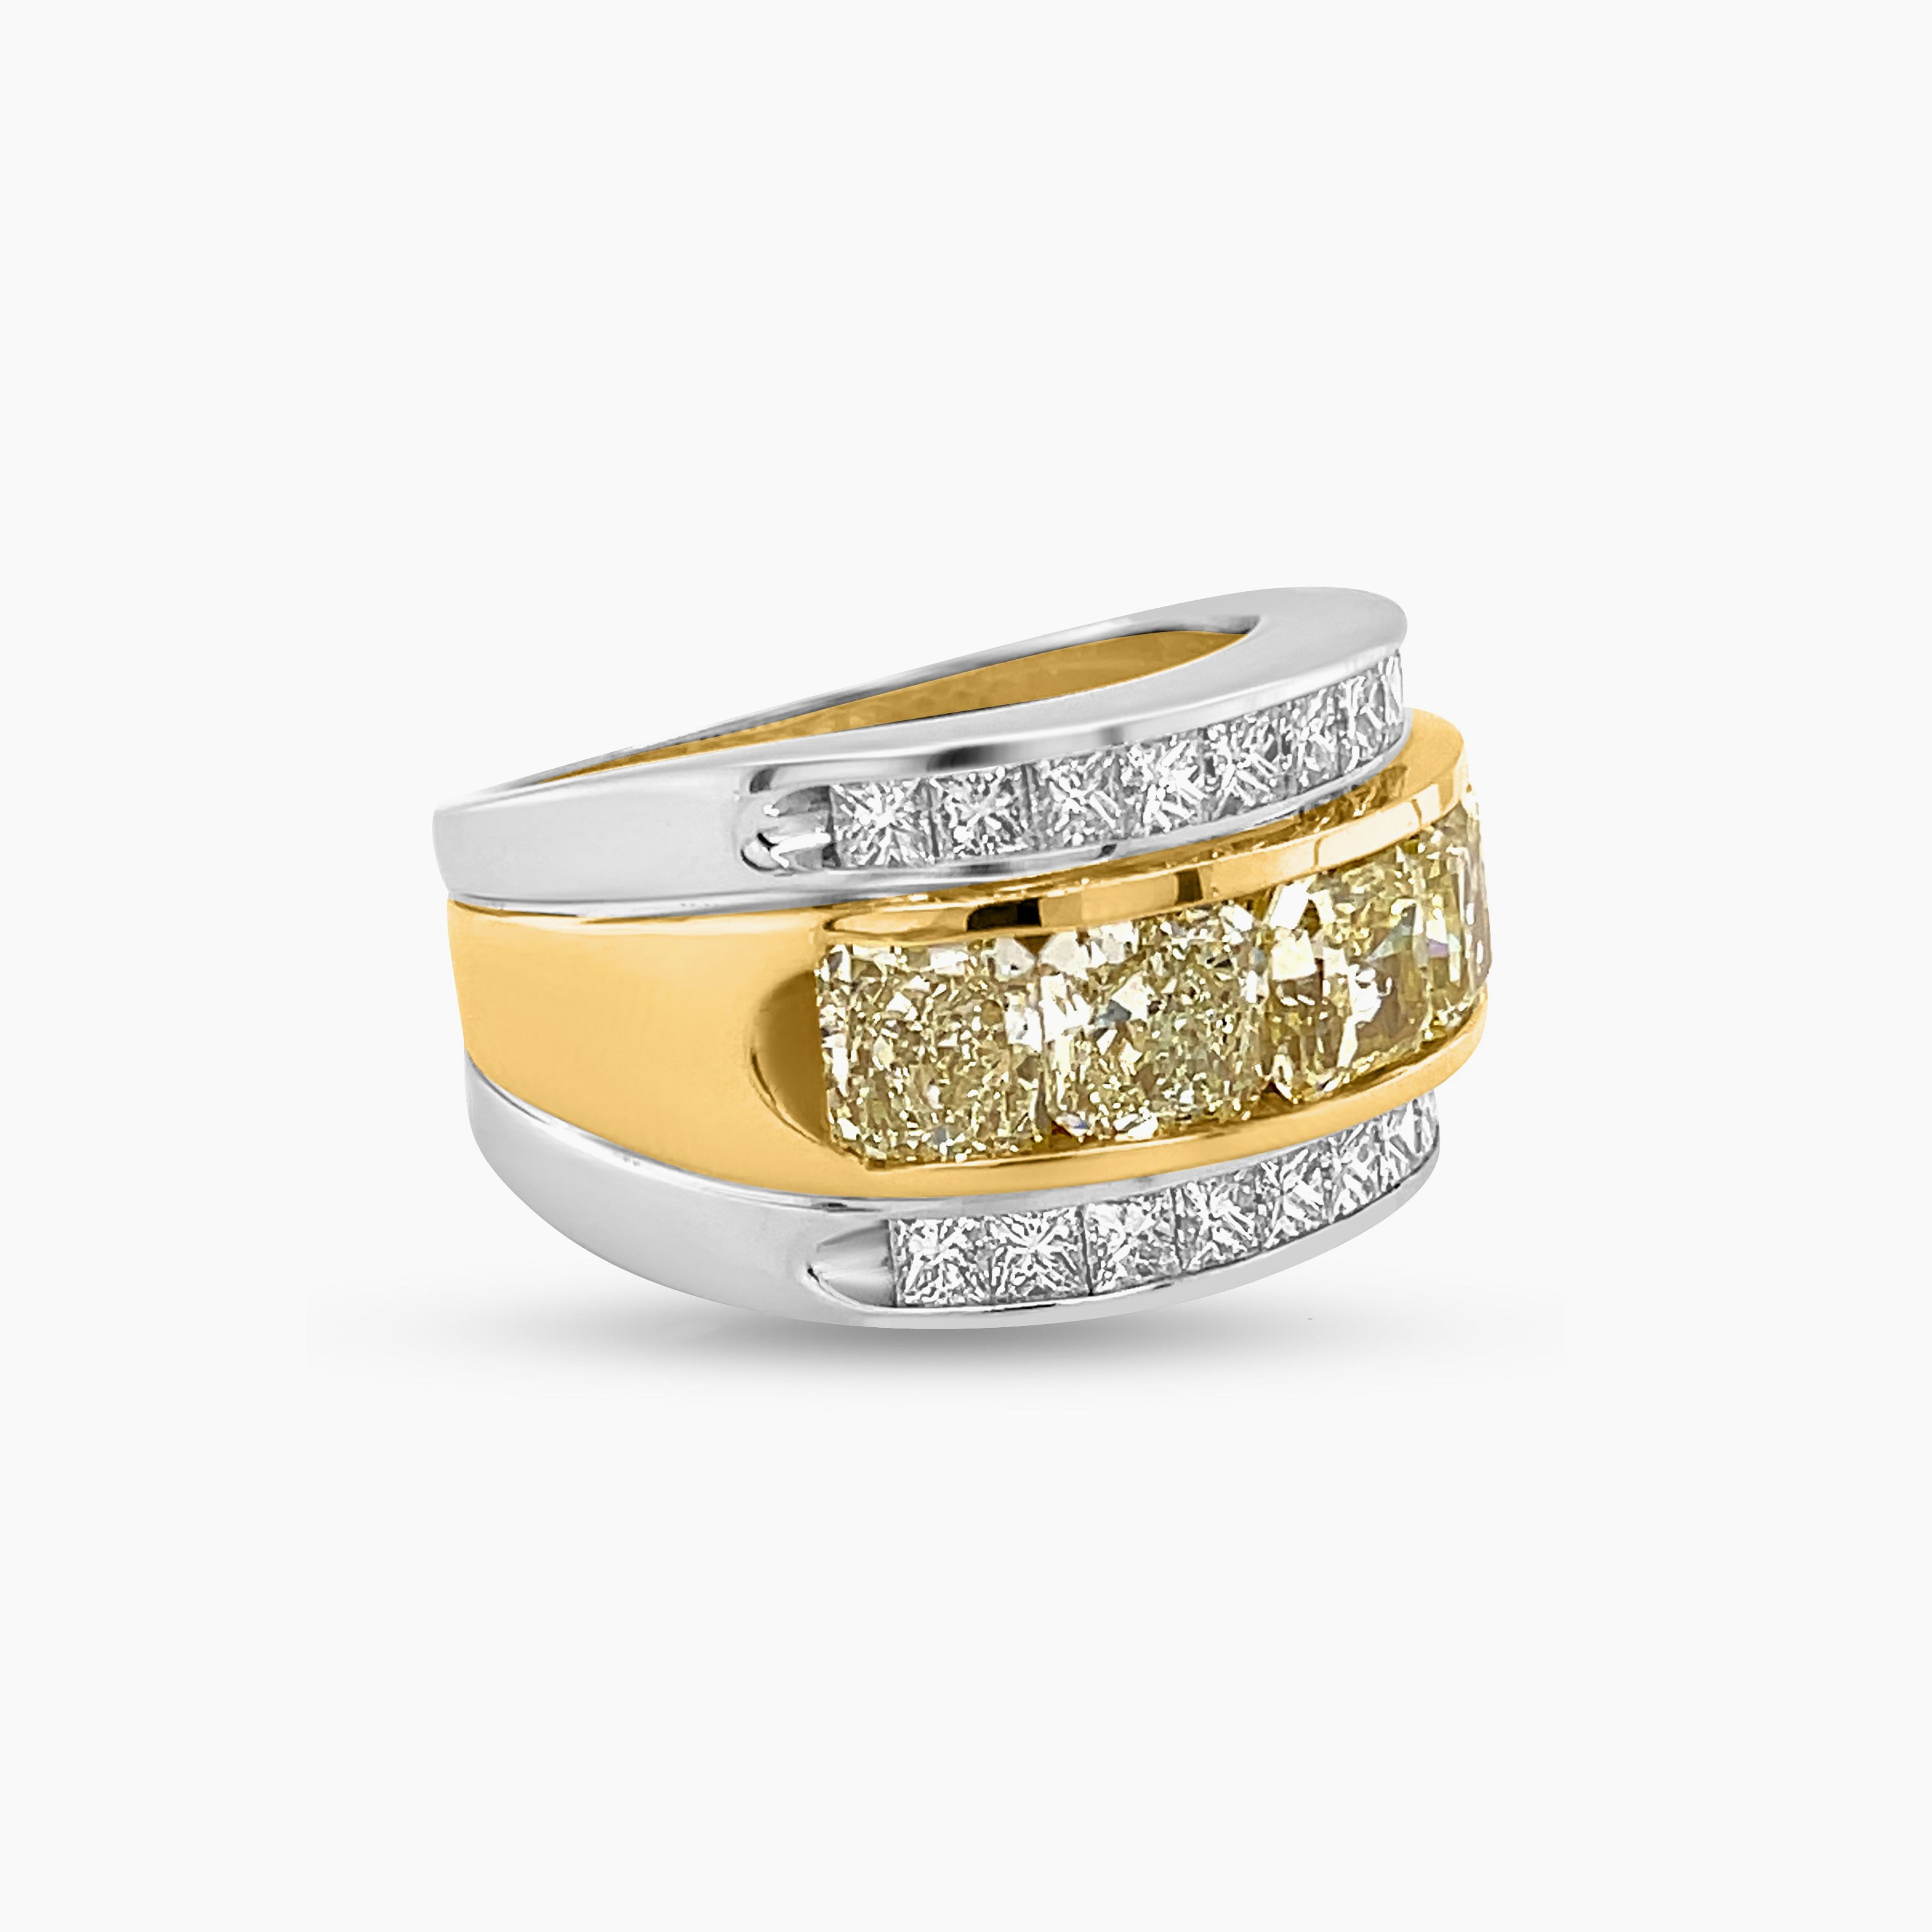 5.33 Carat Yellow Diamond Men's Ring in 14k-18k Two-Tone Gold